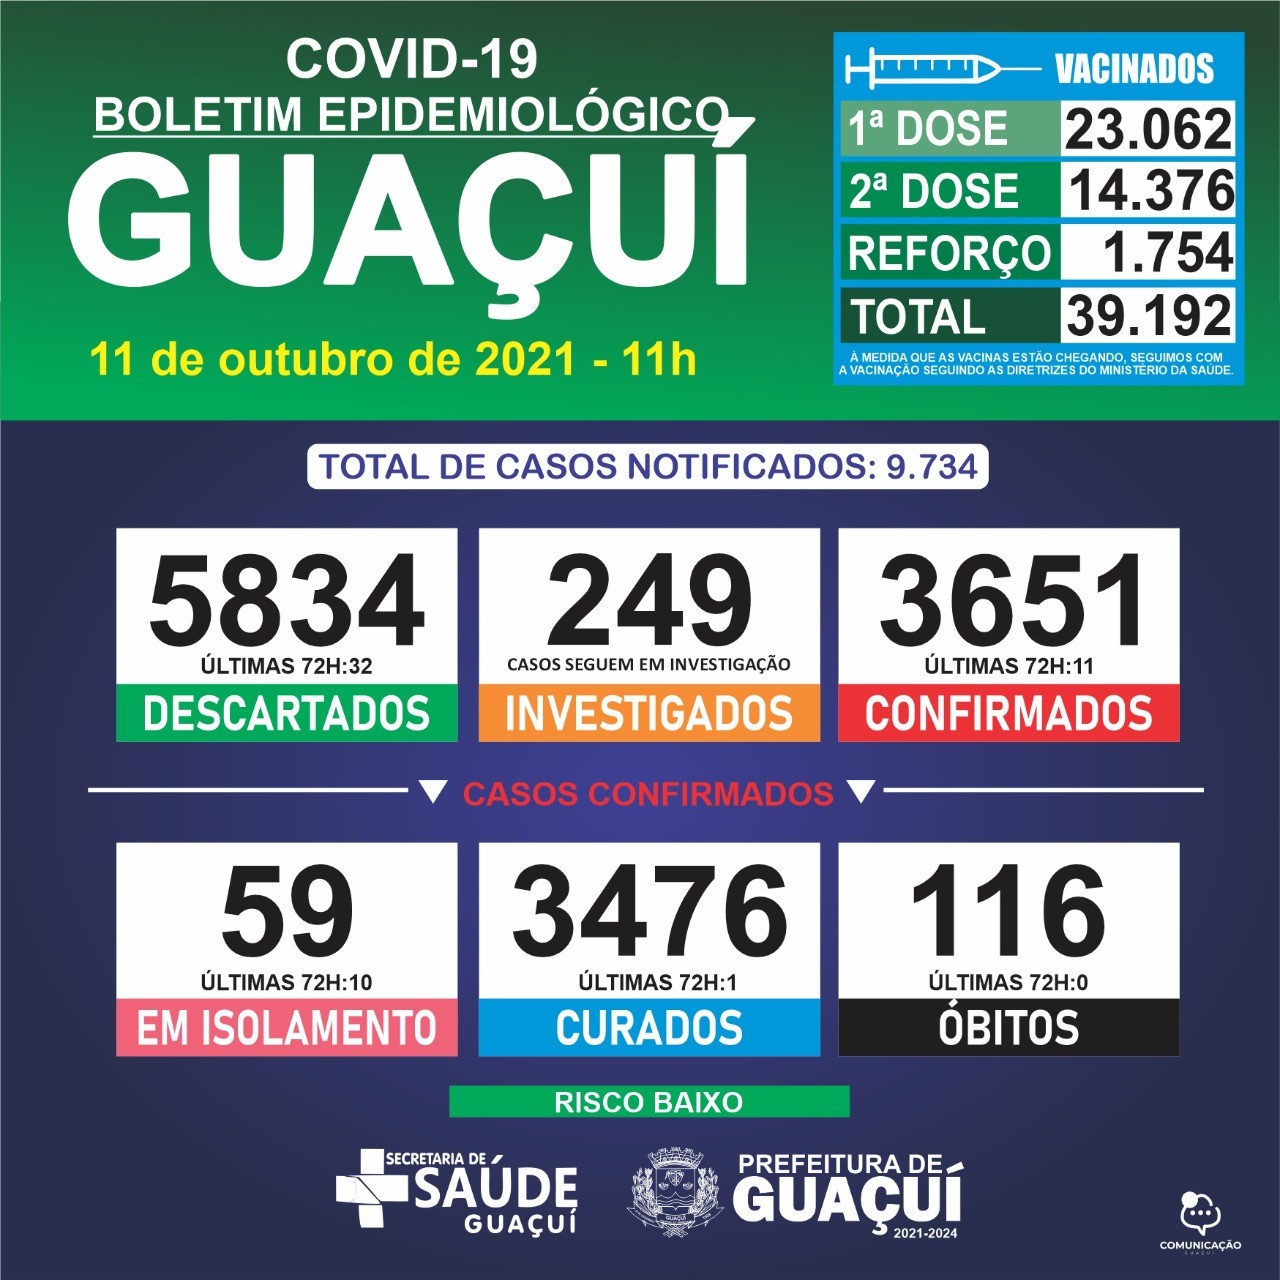 Boletim Epidemiológico 11/10/2021: Guaçuí registra 11 casos confirmados e 1 curado nas últimas 72 horas